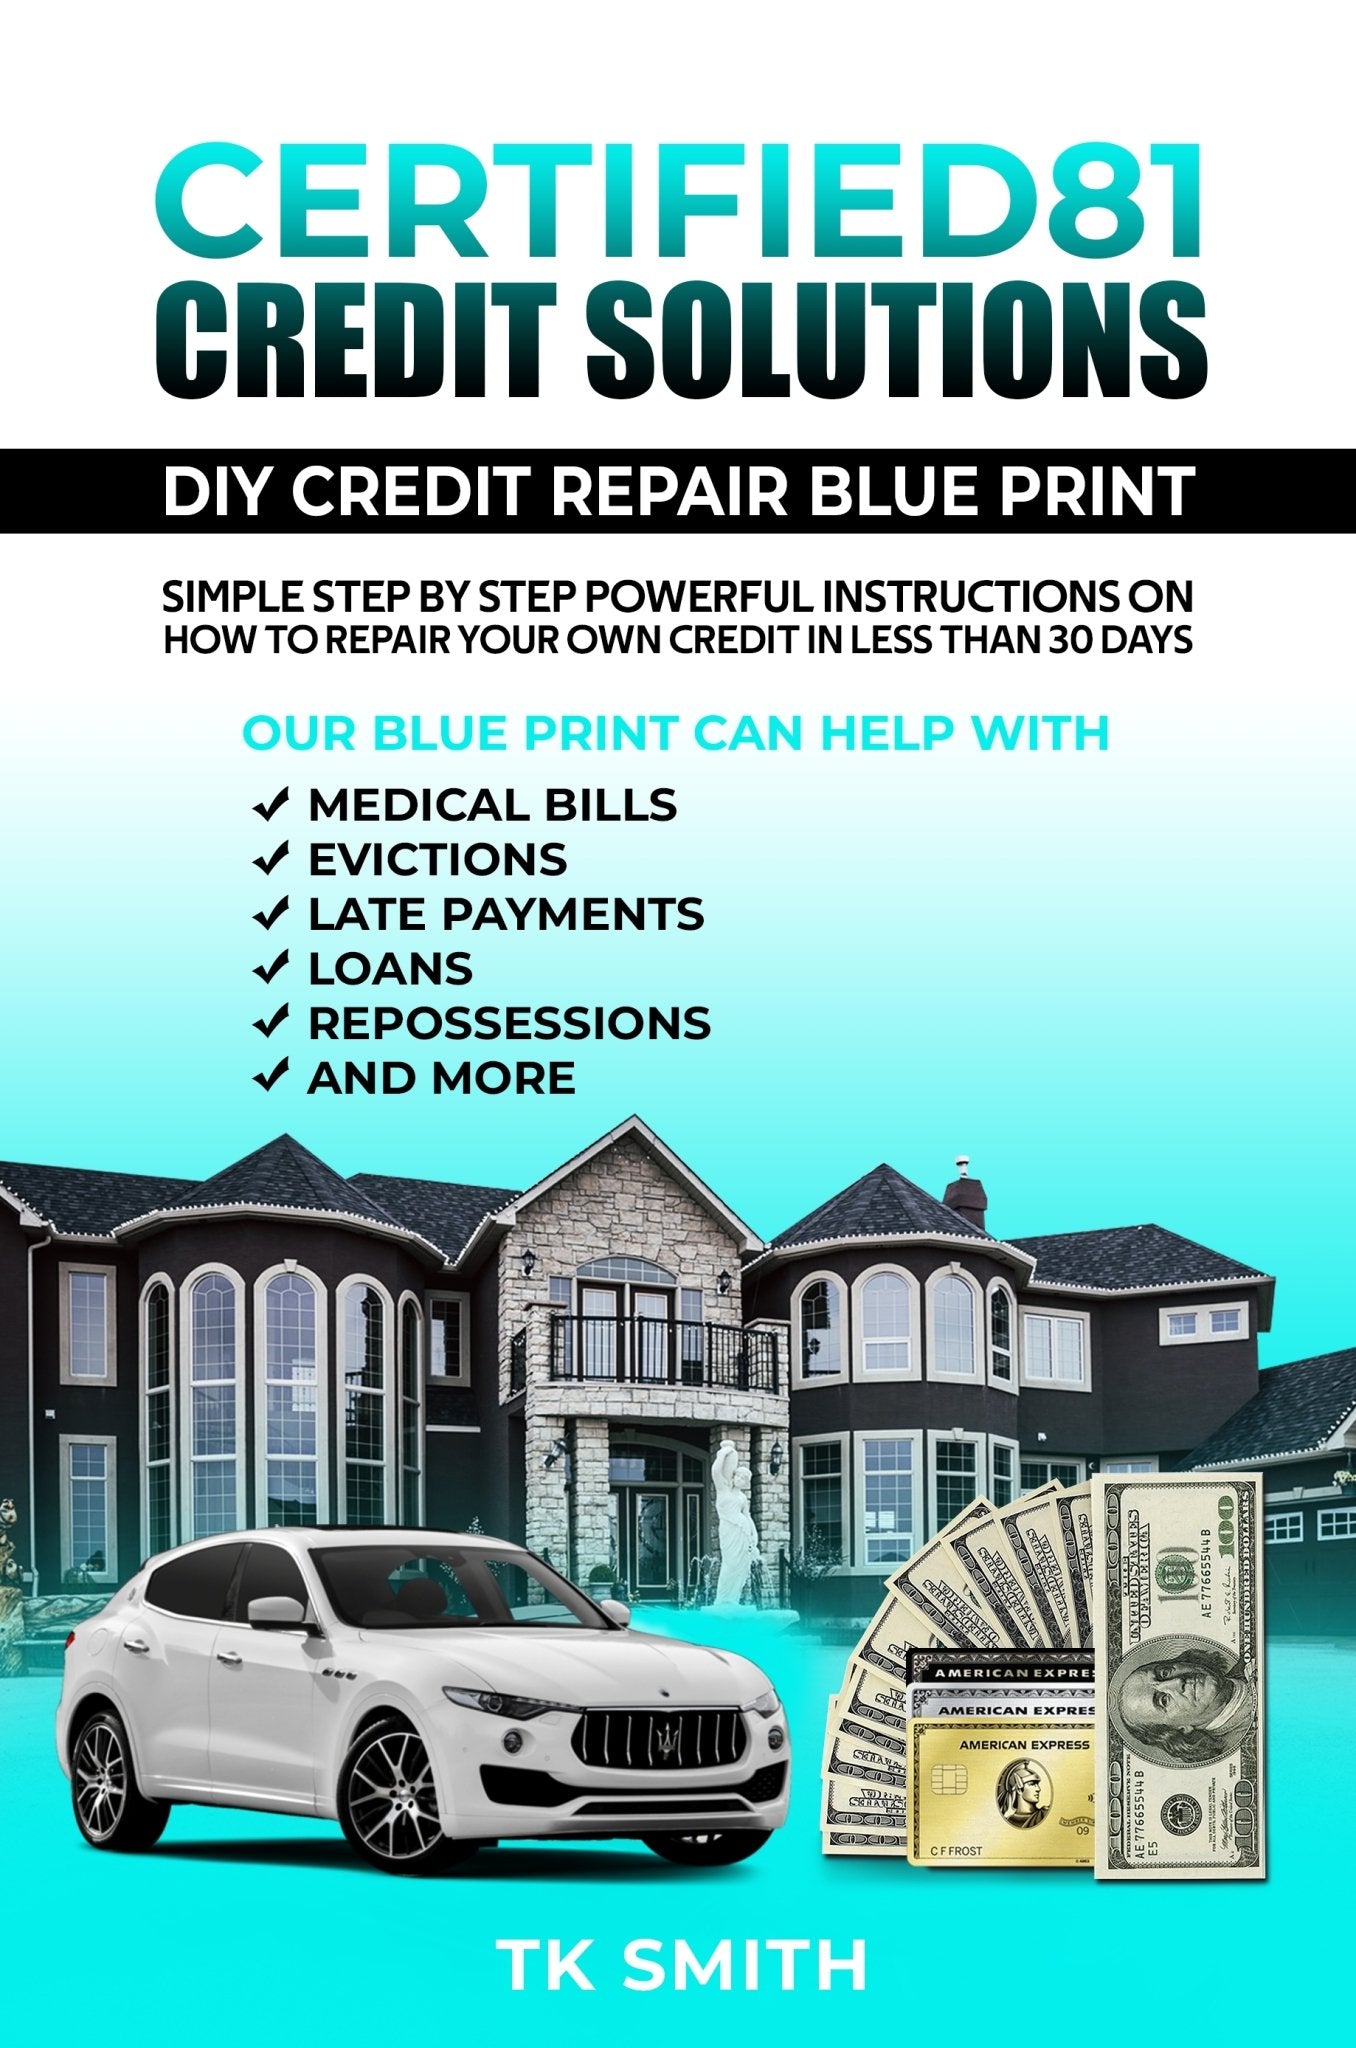 DIY CREDIT REPAIR EBOOK - Certified81 Credit Solutions